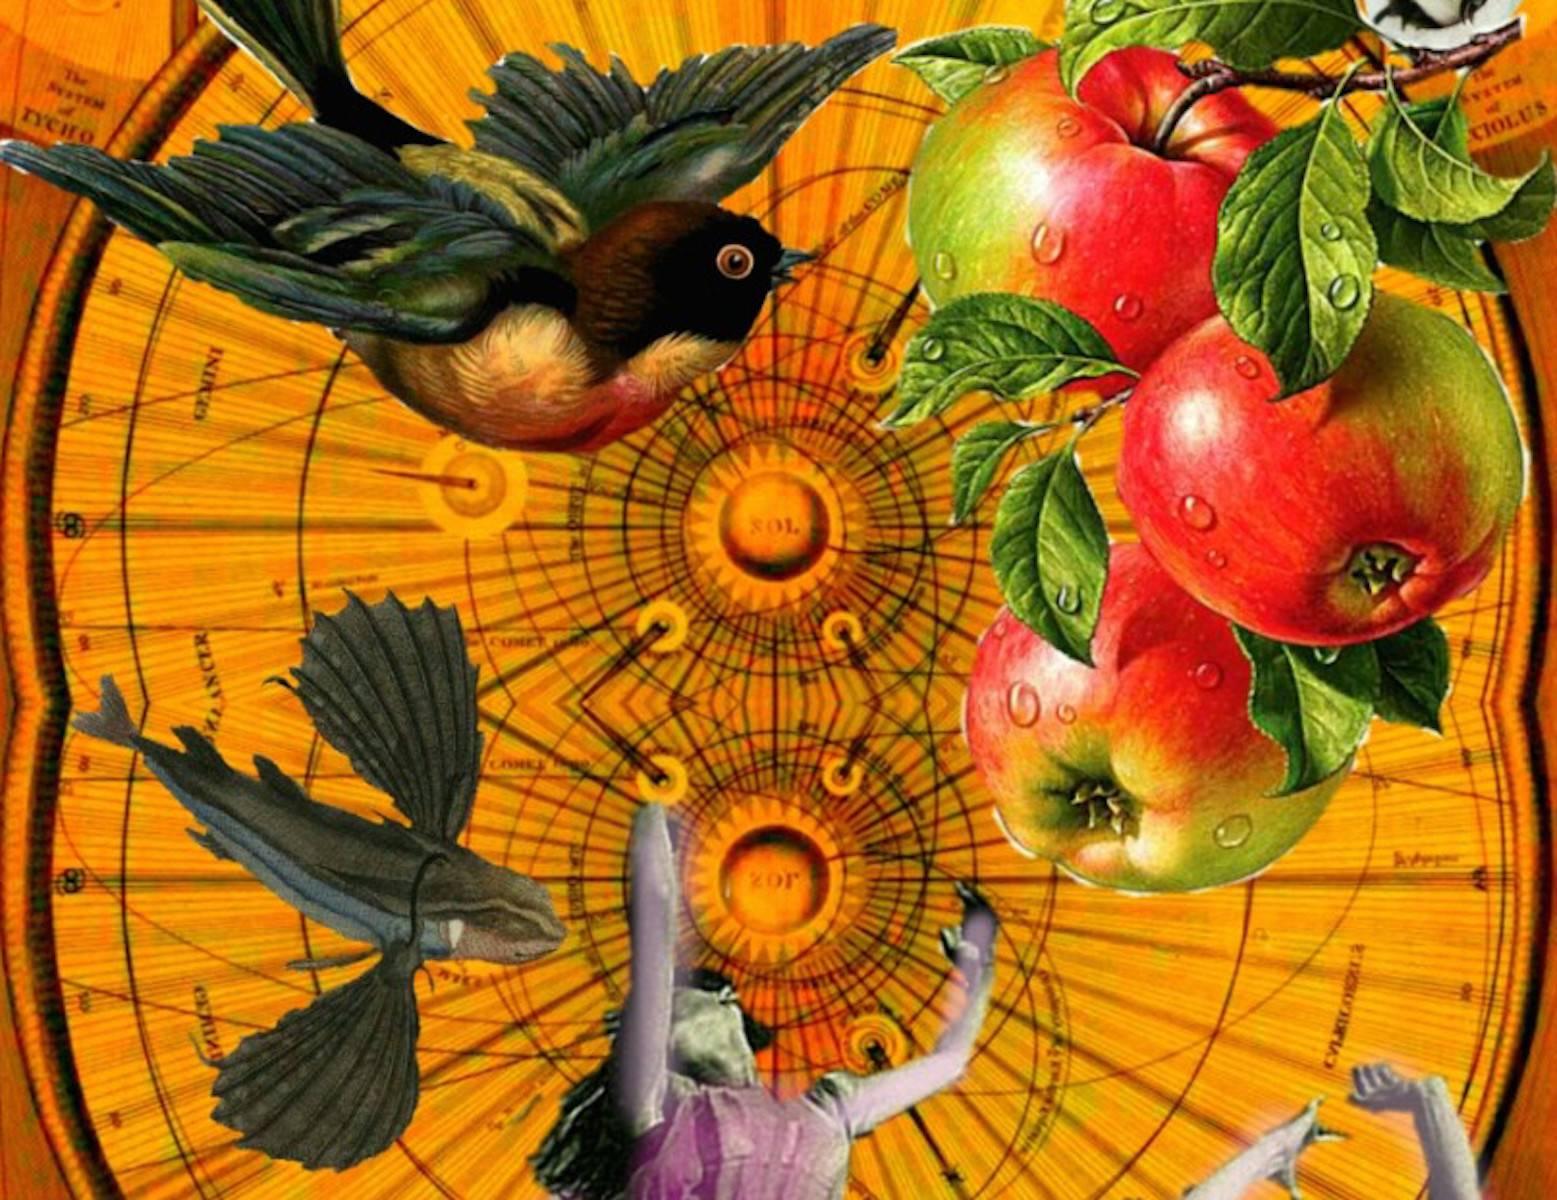 Apples in Fall - Contemporary Mixed Media Art by Robert Fleischman